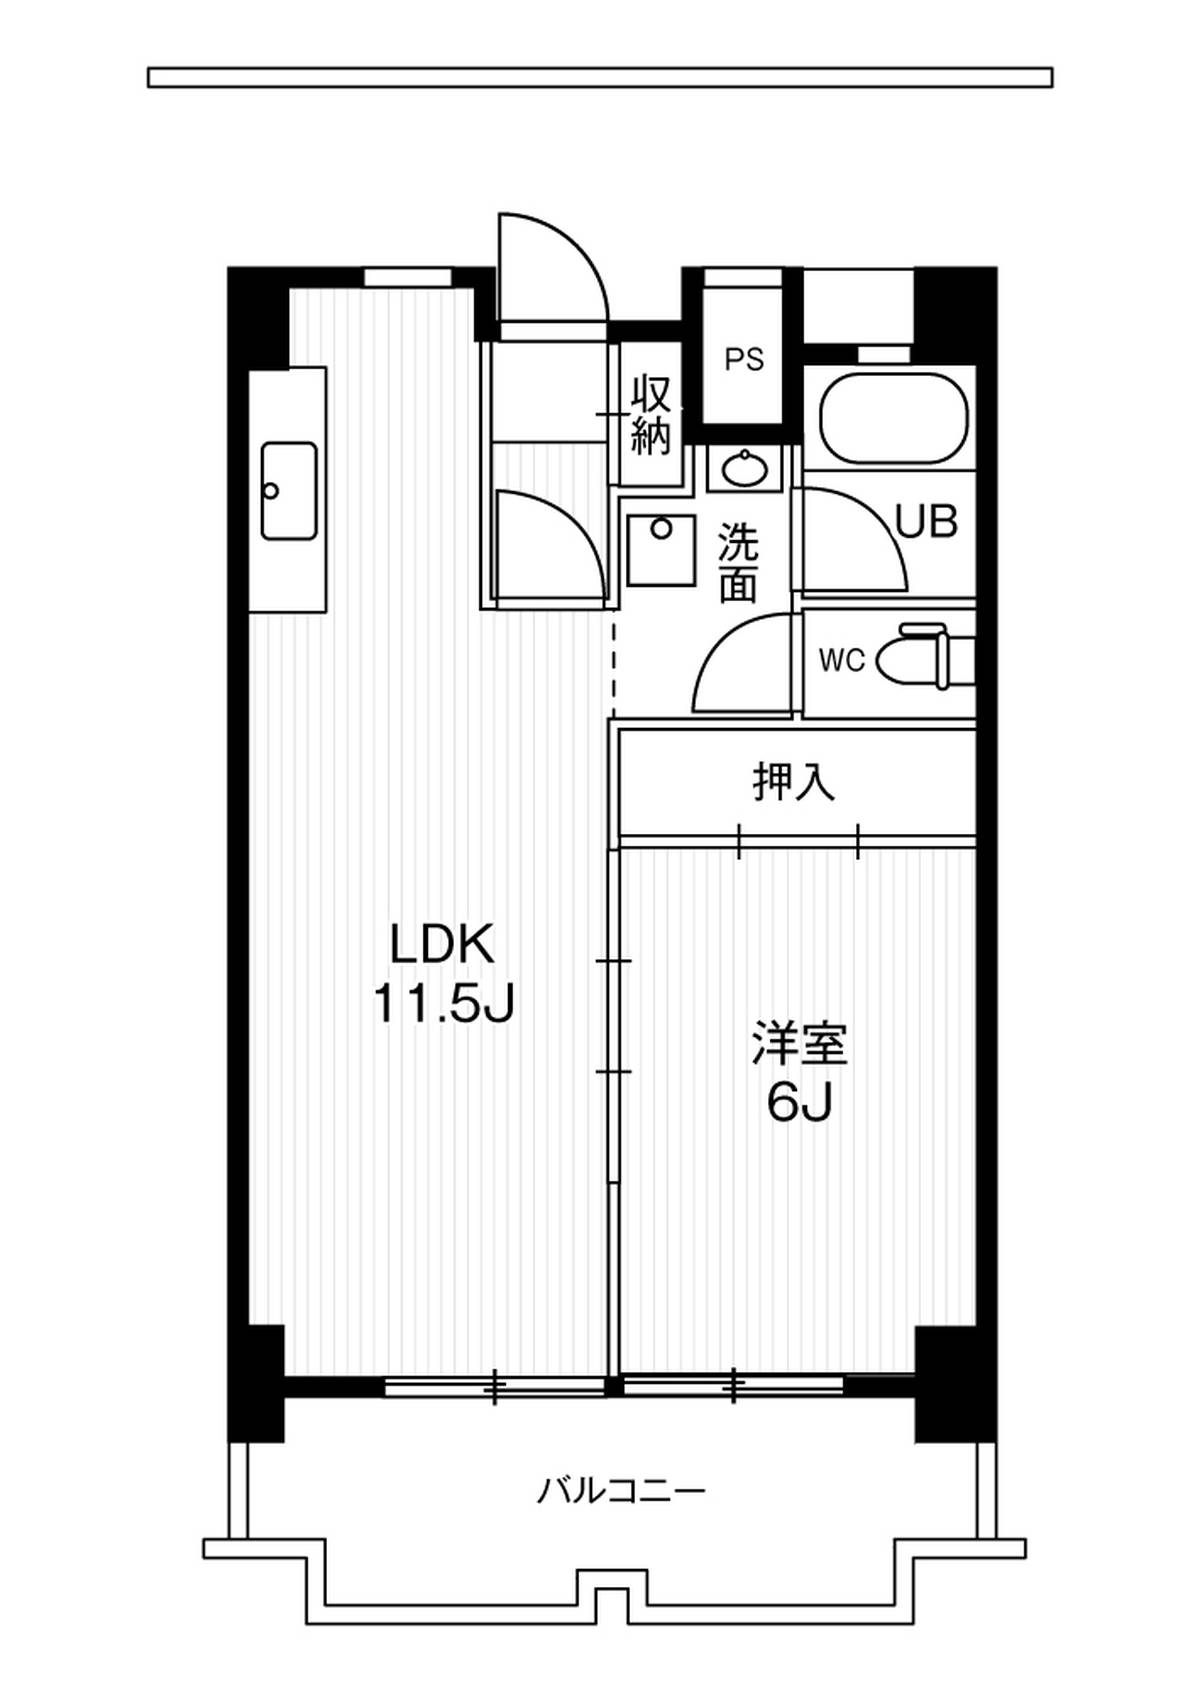 Sơ đồ phòng 1LDK của Village House Ichinomiya Tower ở Ichinomiya-shi